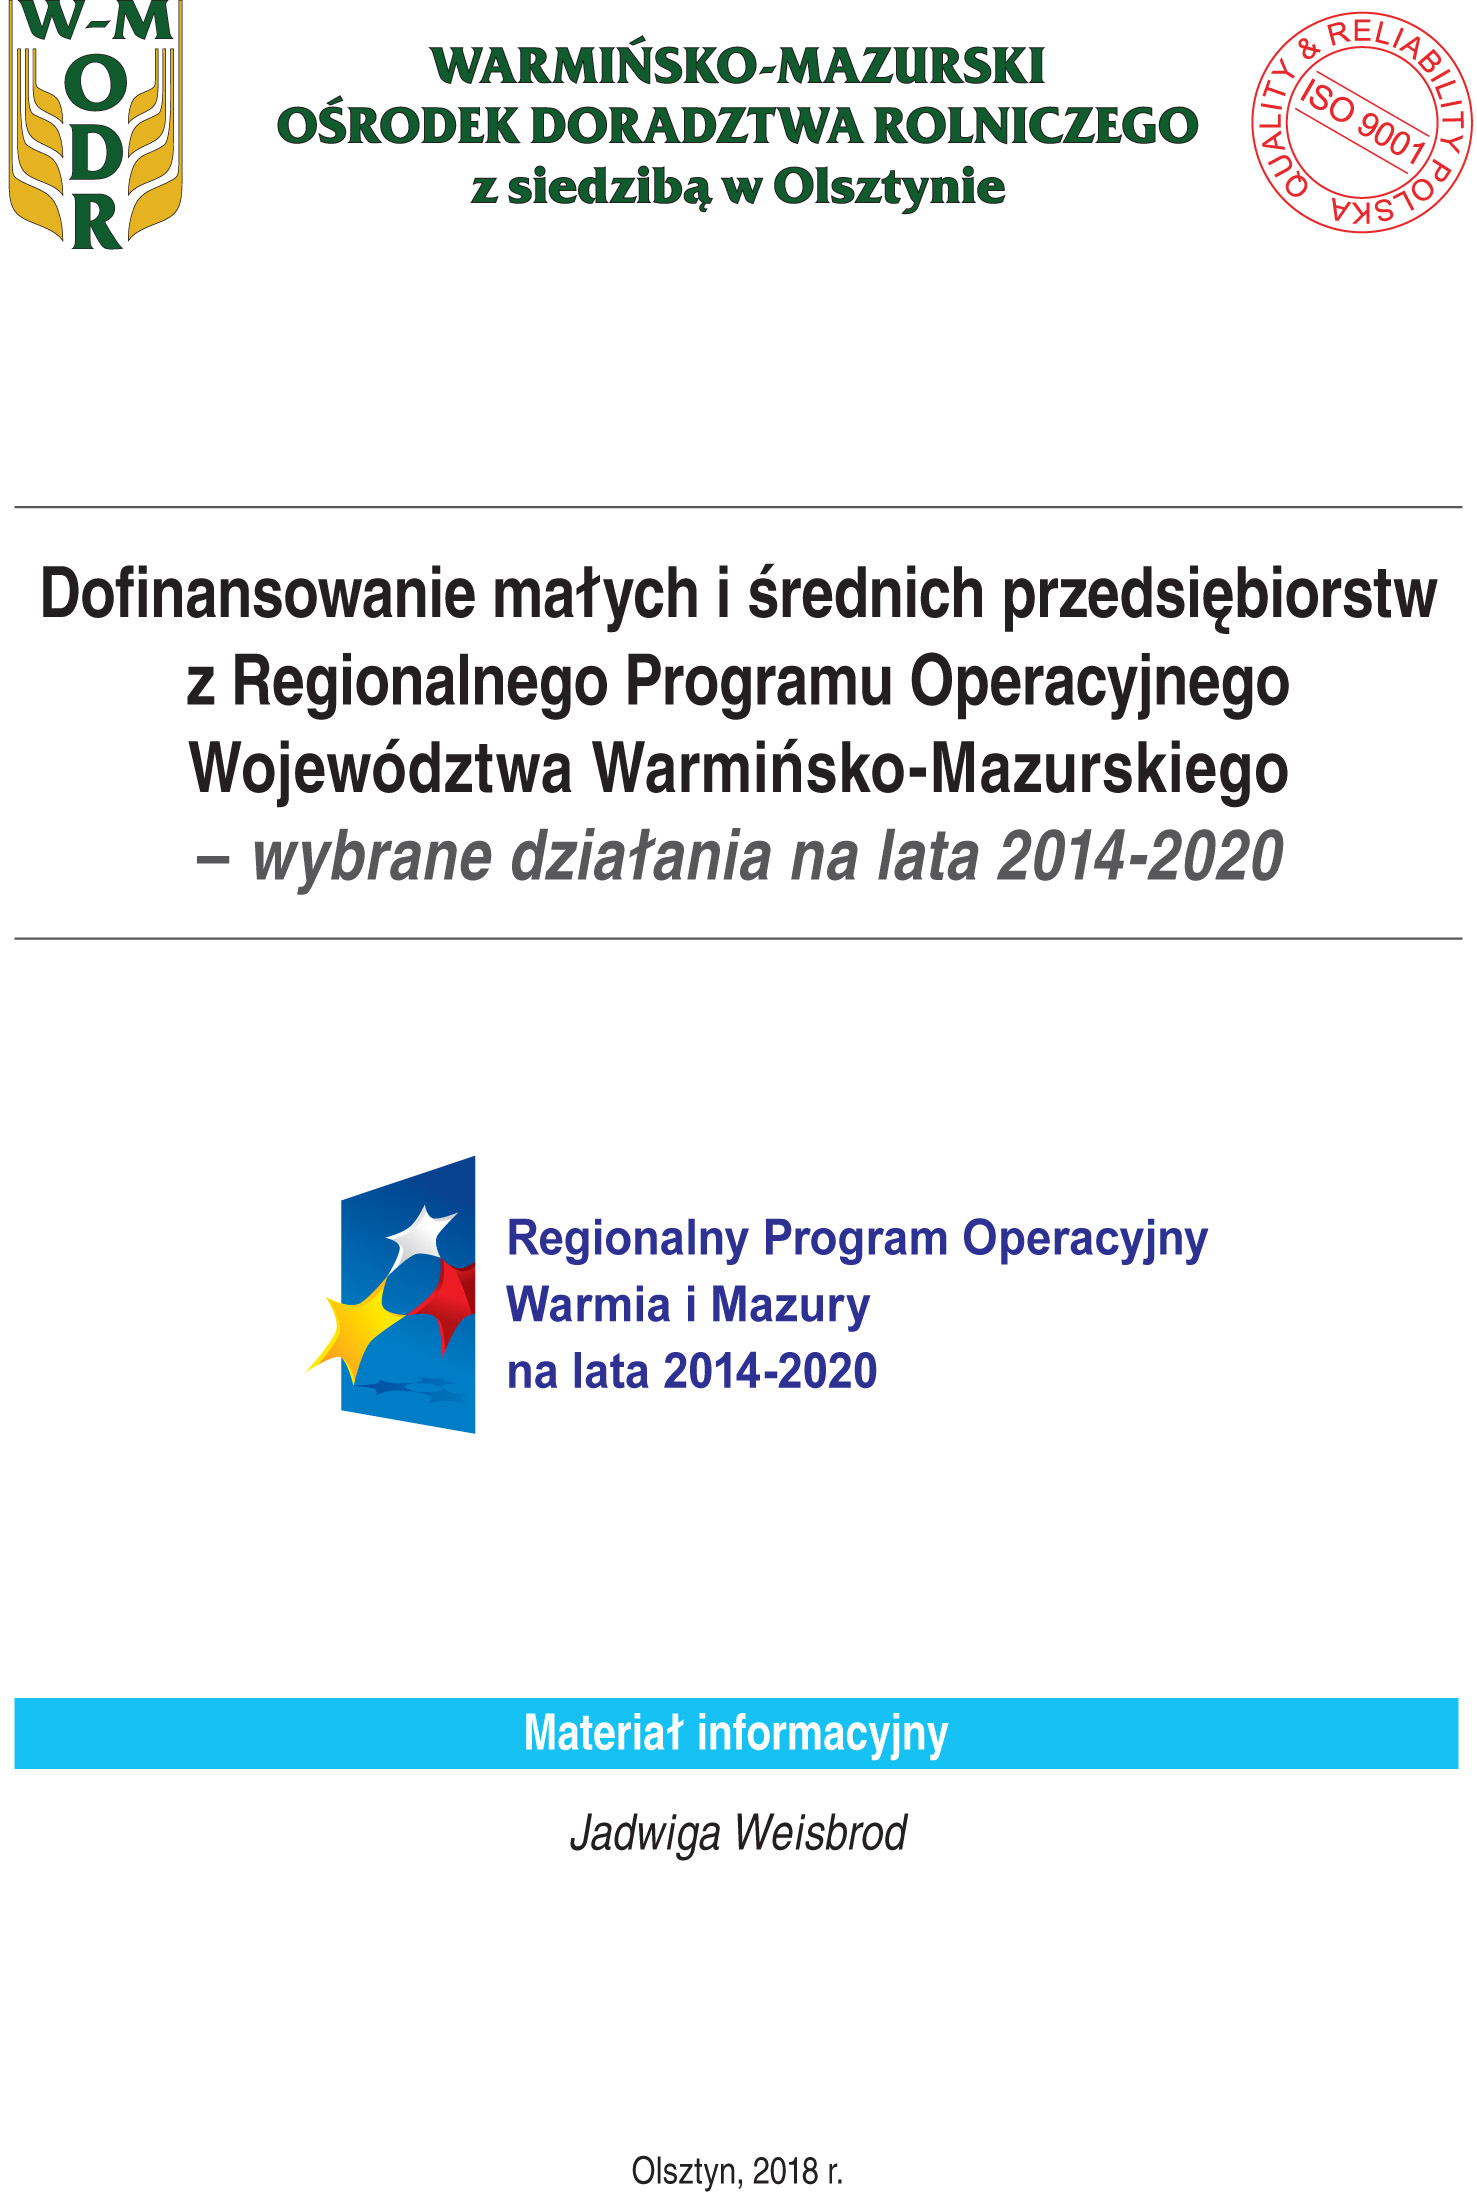 Dofinansowanie małych i średnich przedsiębiorstw z RPO województwa warmińsko-mazurskiego